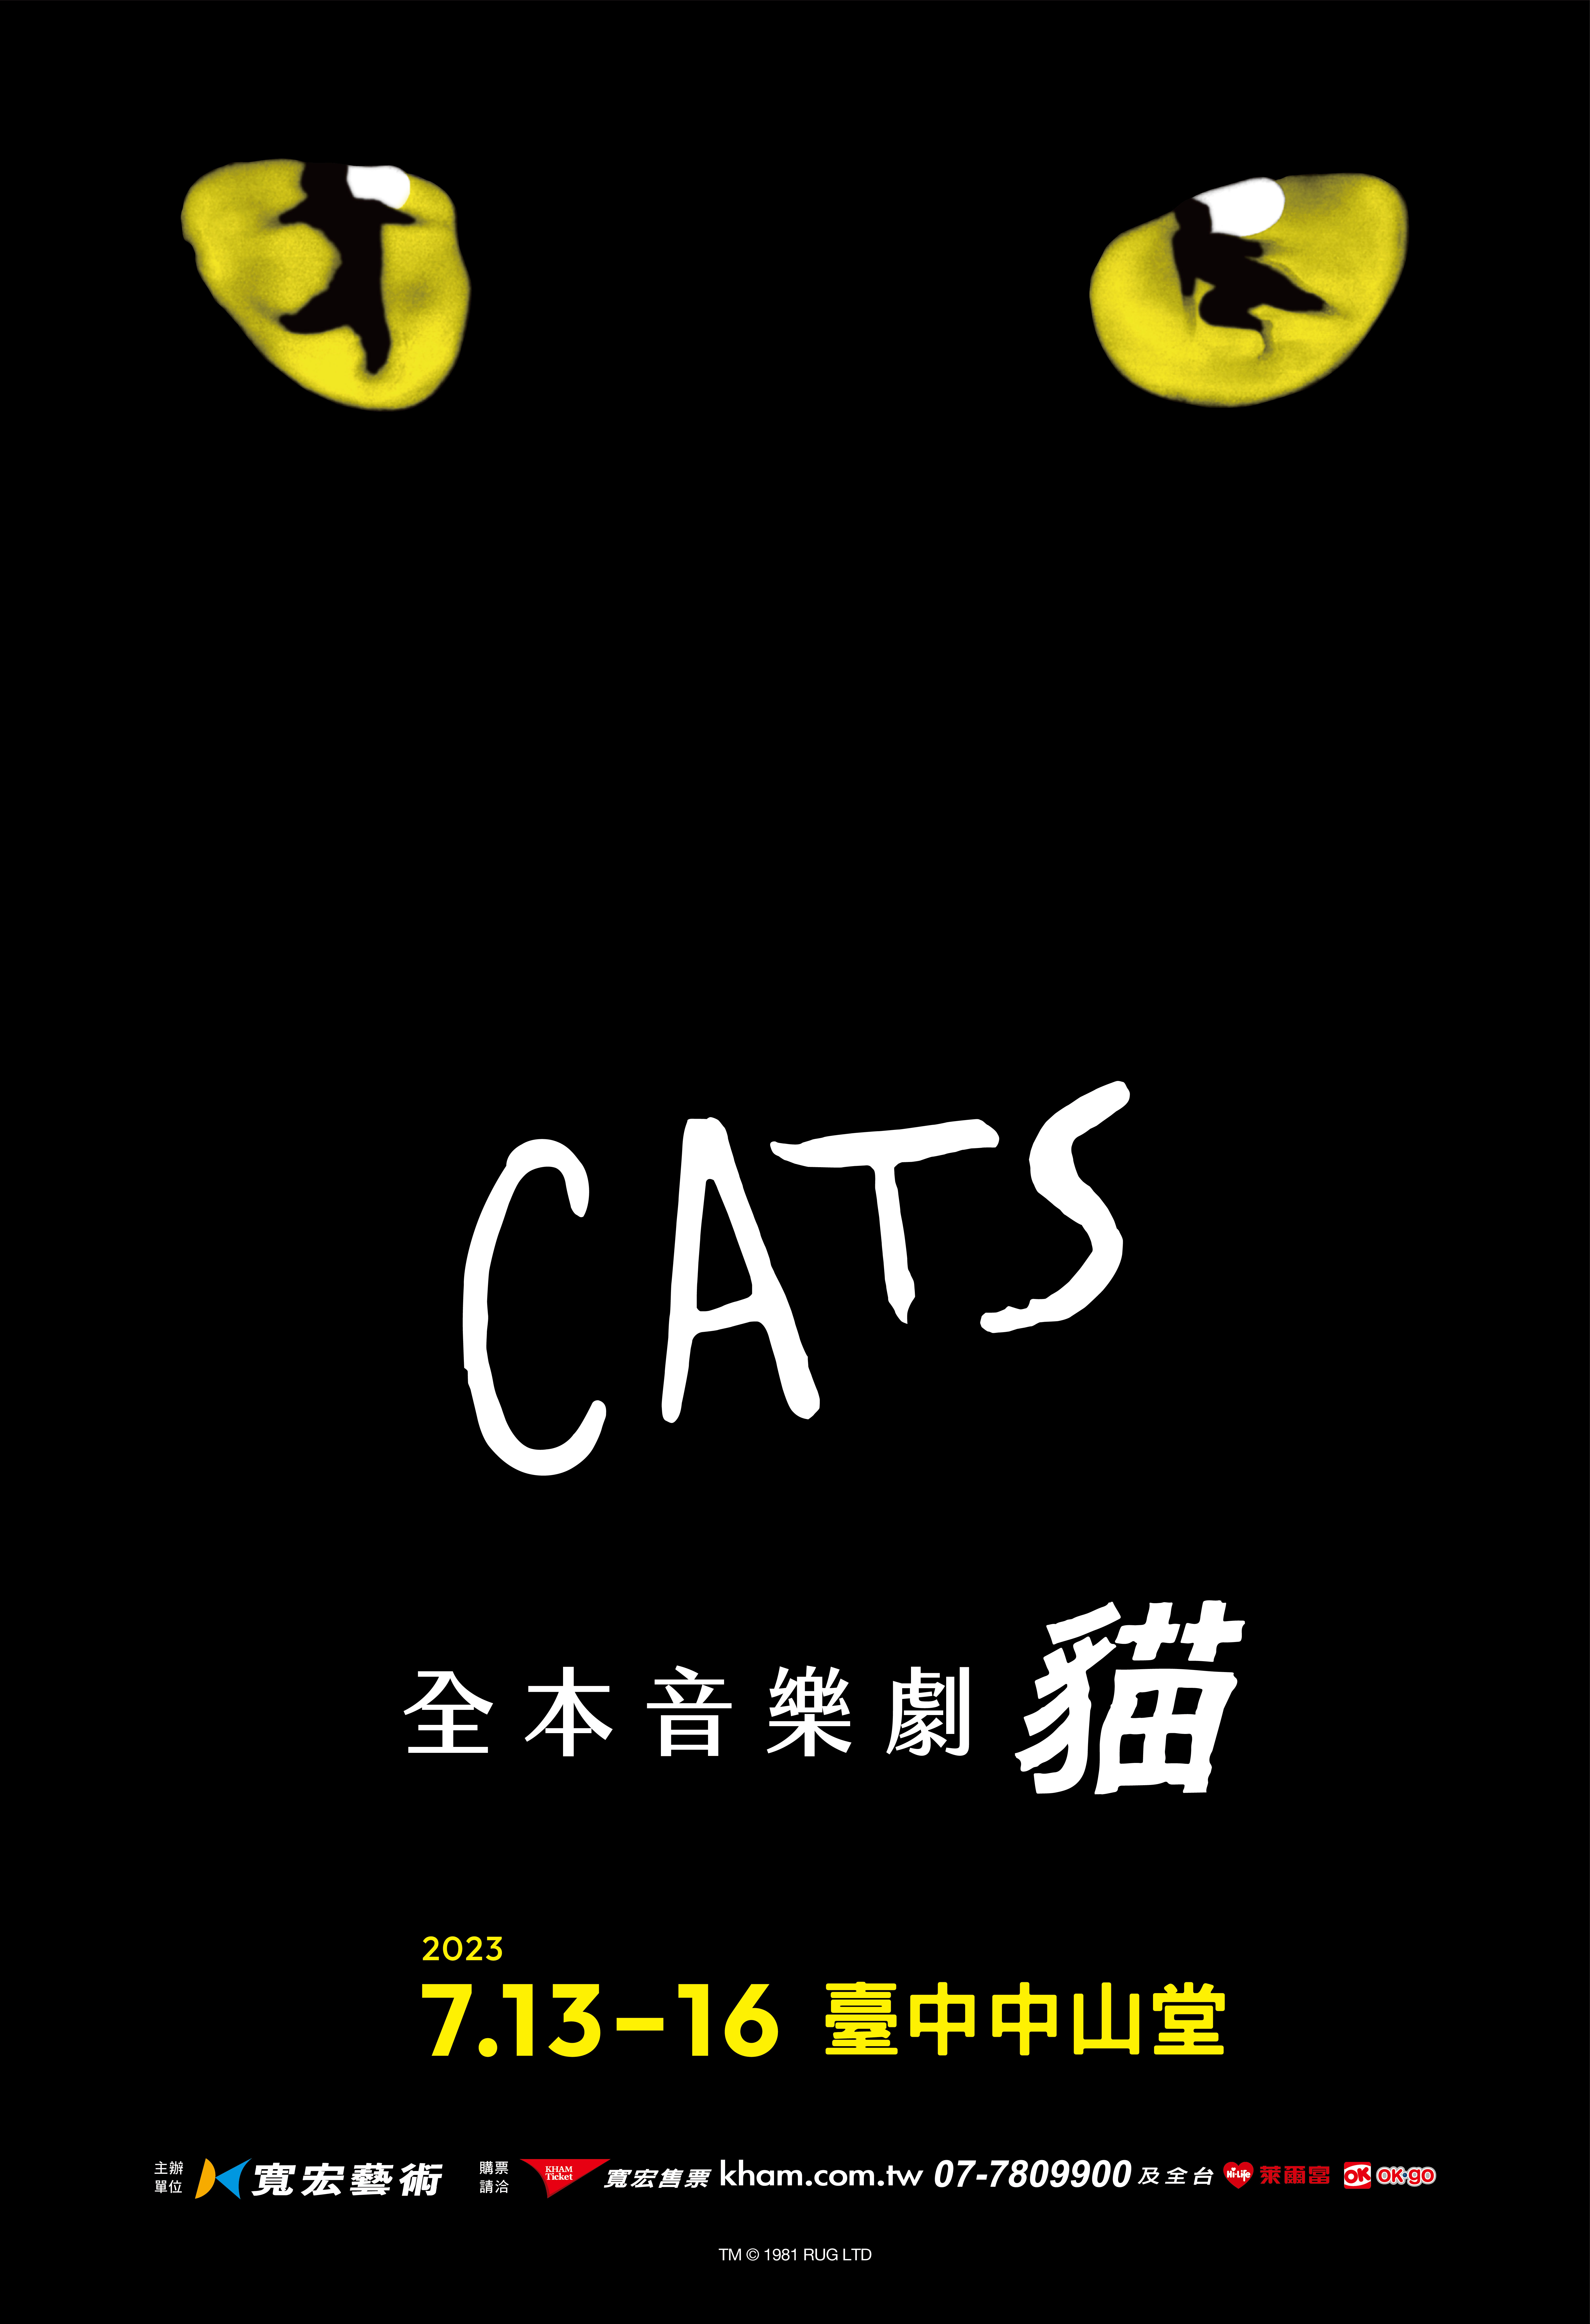 寬宏藝術音樂劇《貓》、共1張圖片